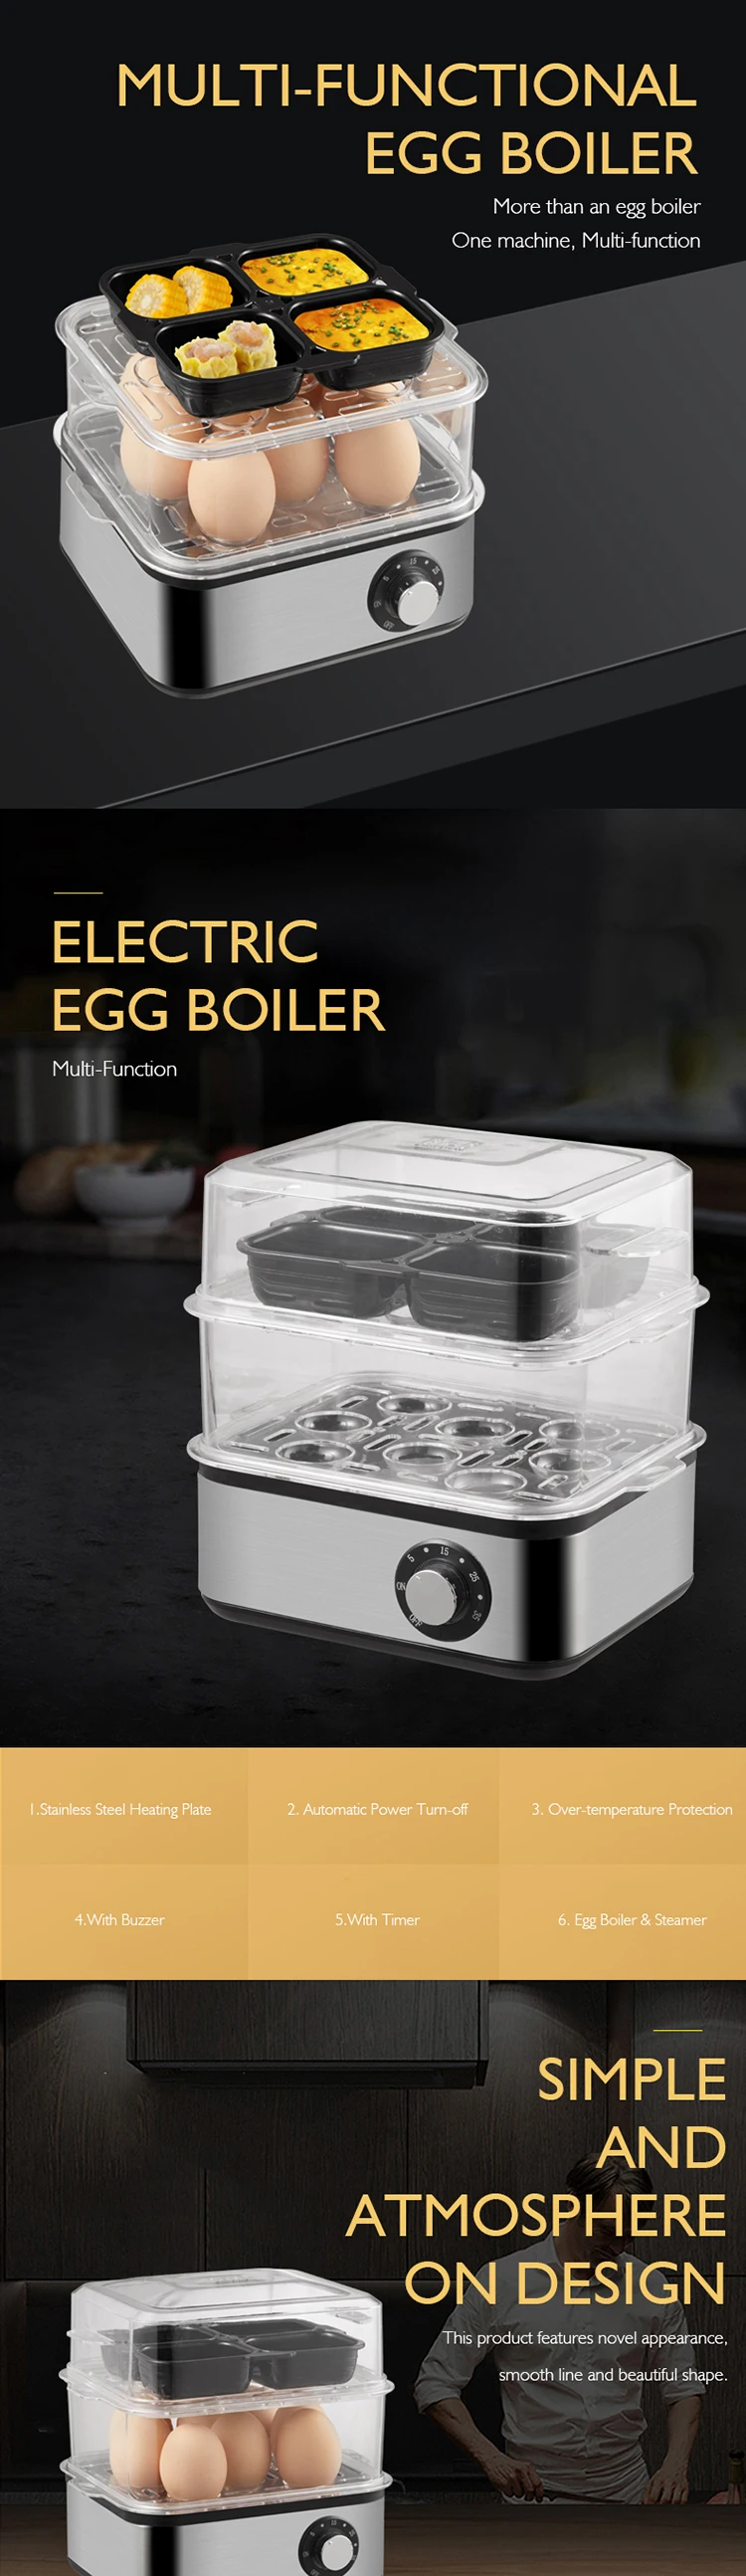 Egg-Boiler_01.jpg